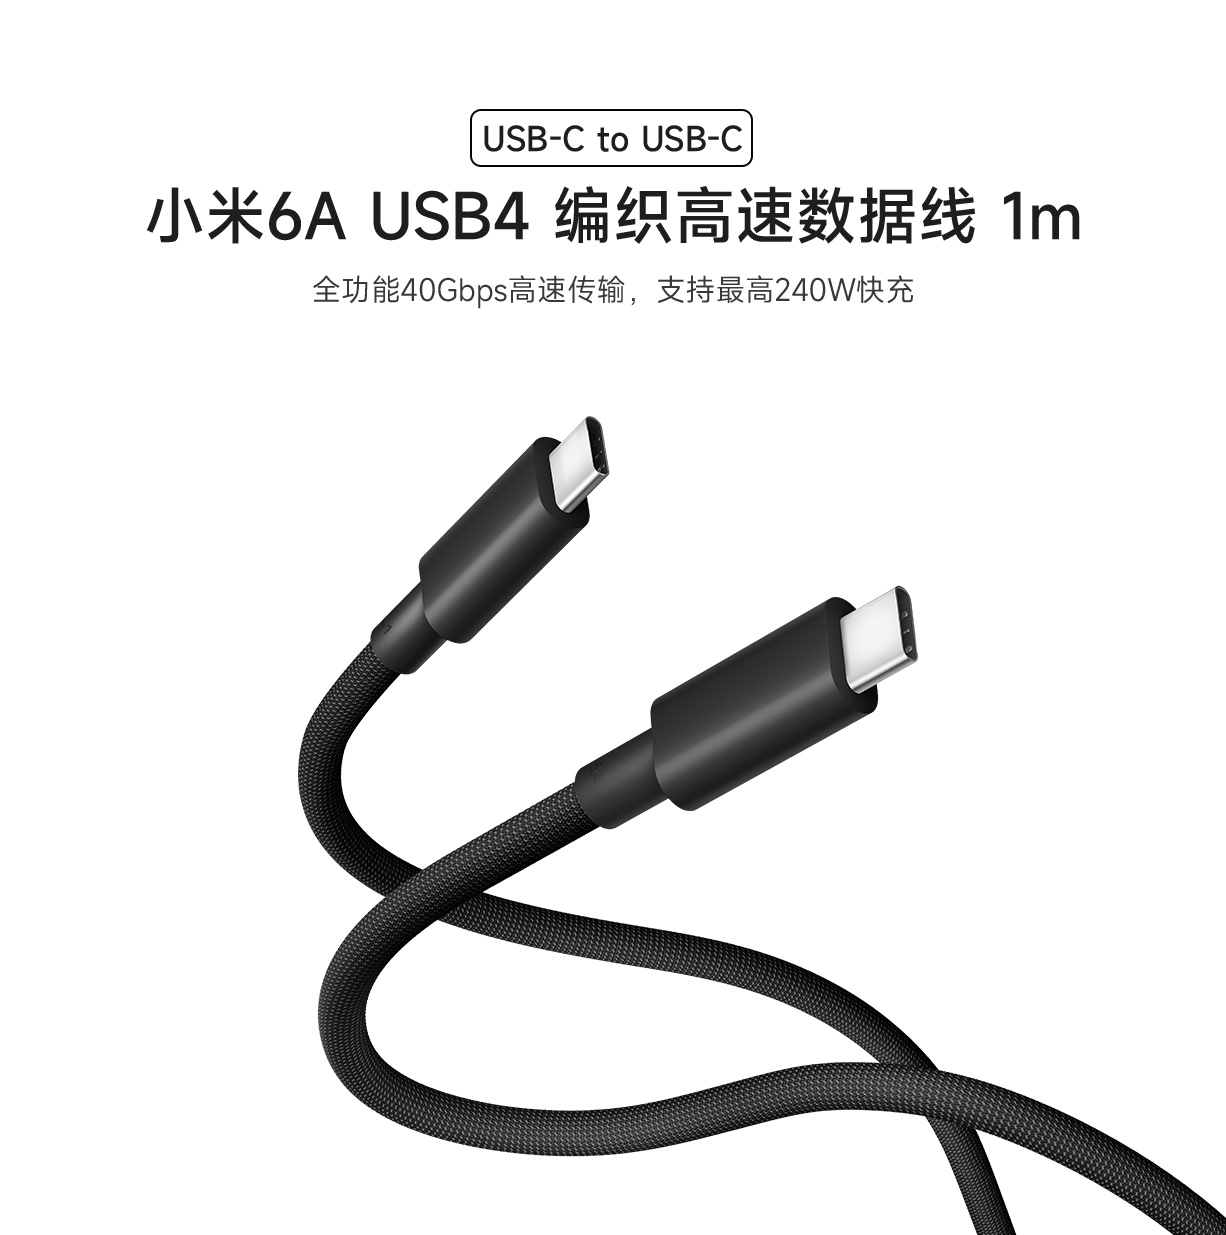 小米 6A USB4 编织高速数据线上市：1 米长度、支持 240W 快充，99 元